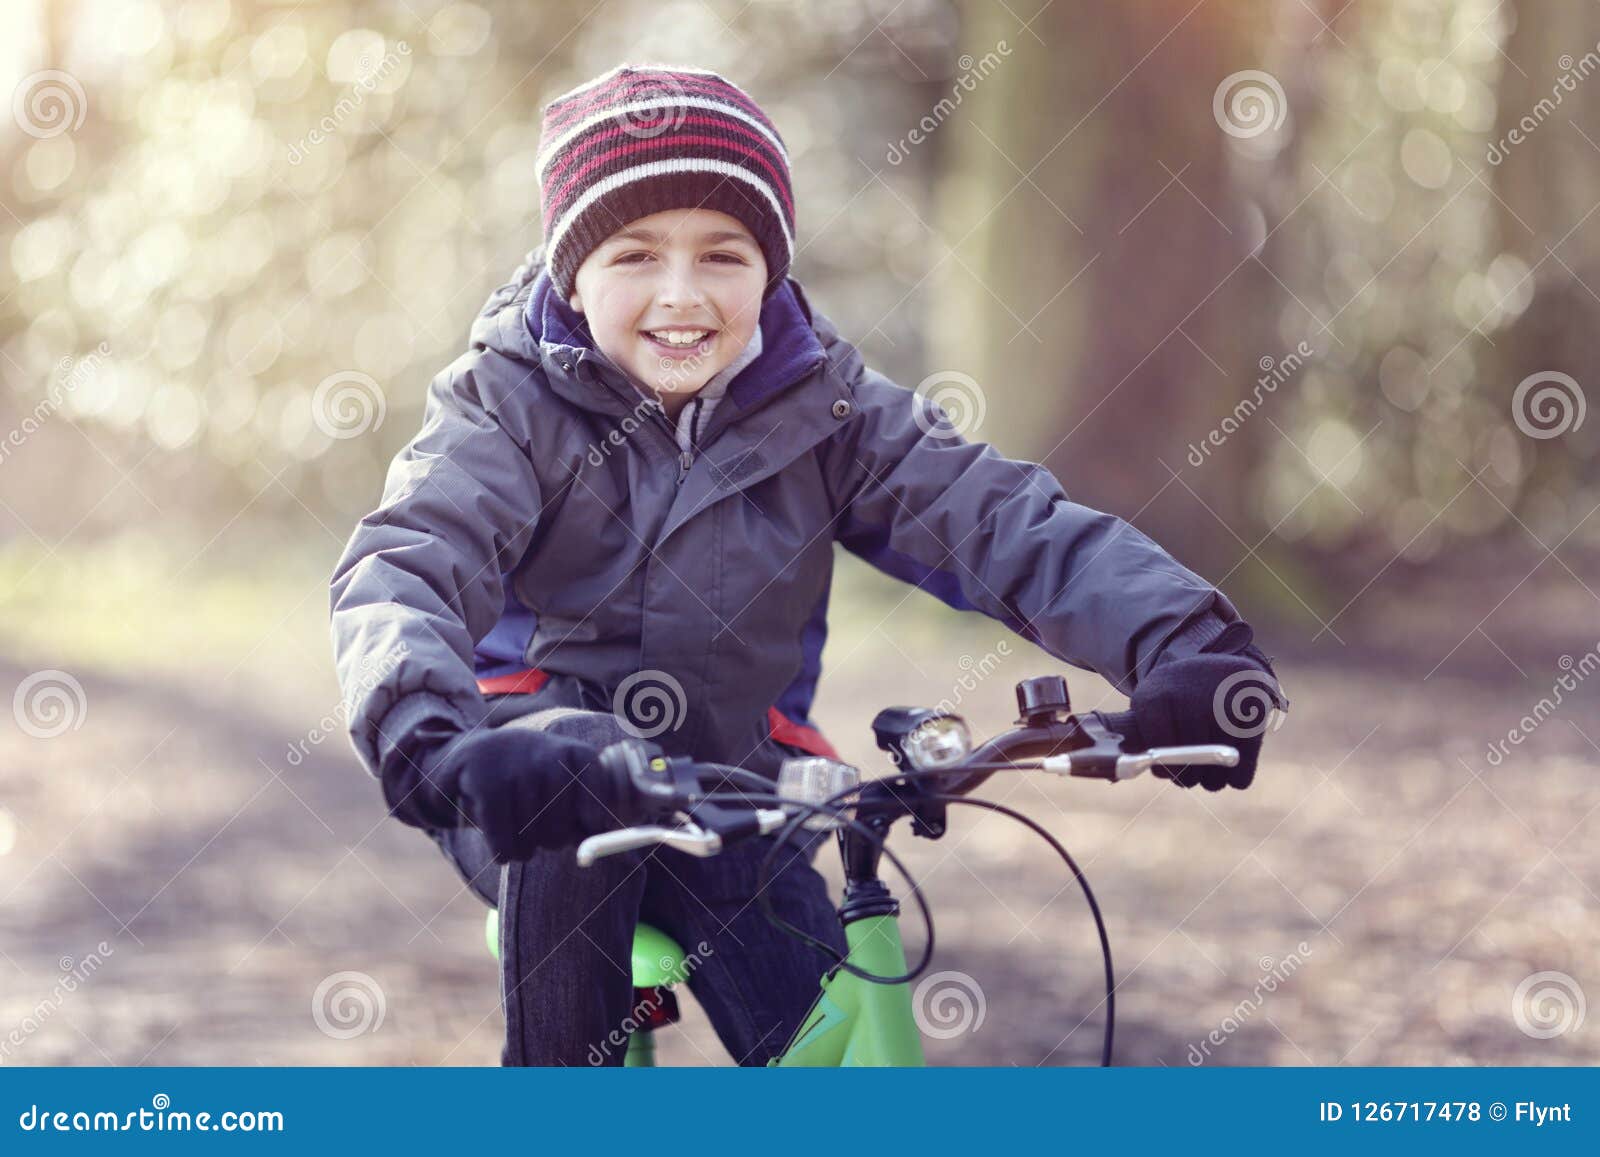 ragazzo in bicicletta in parco fluviale